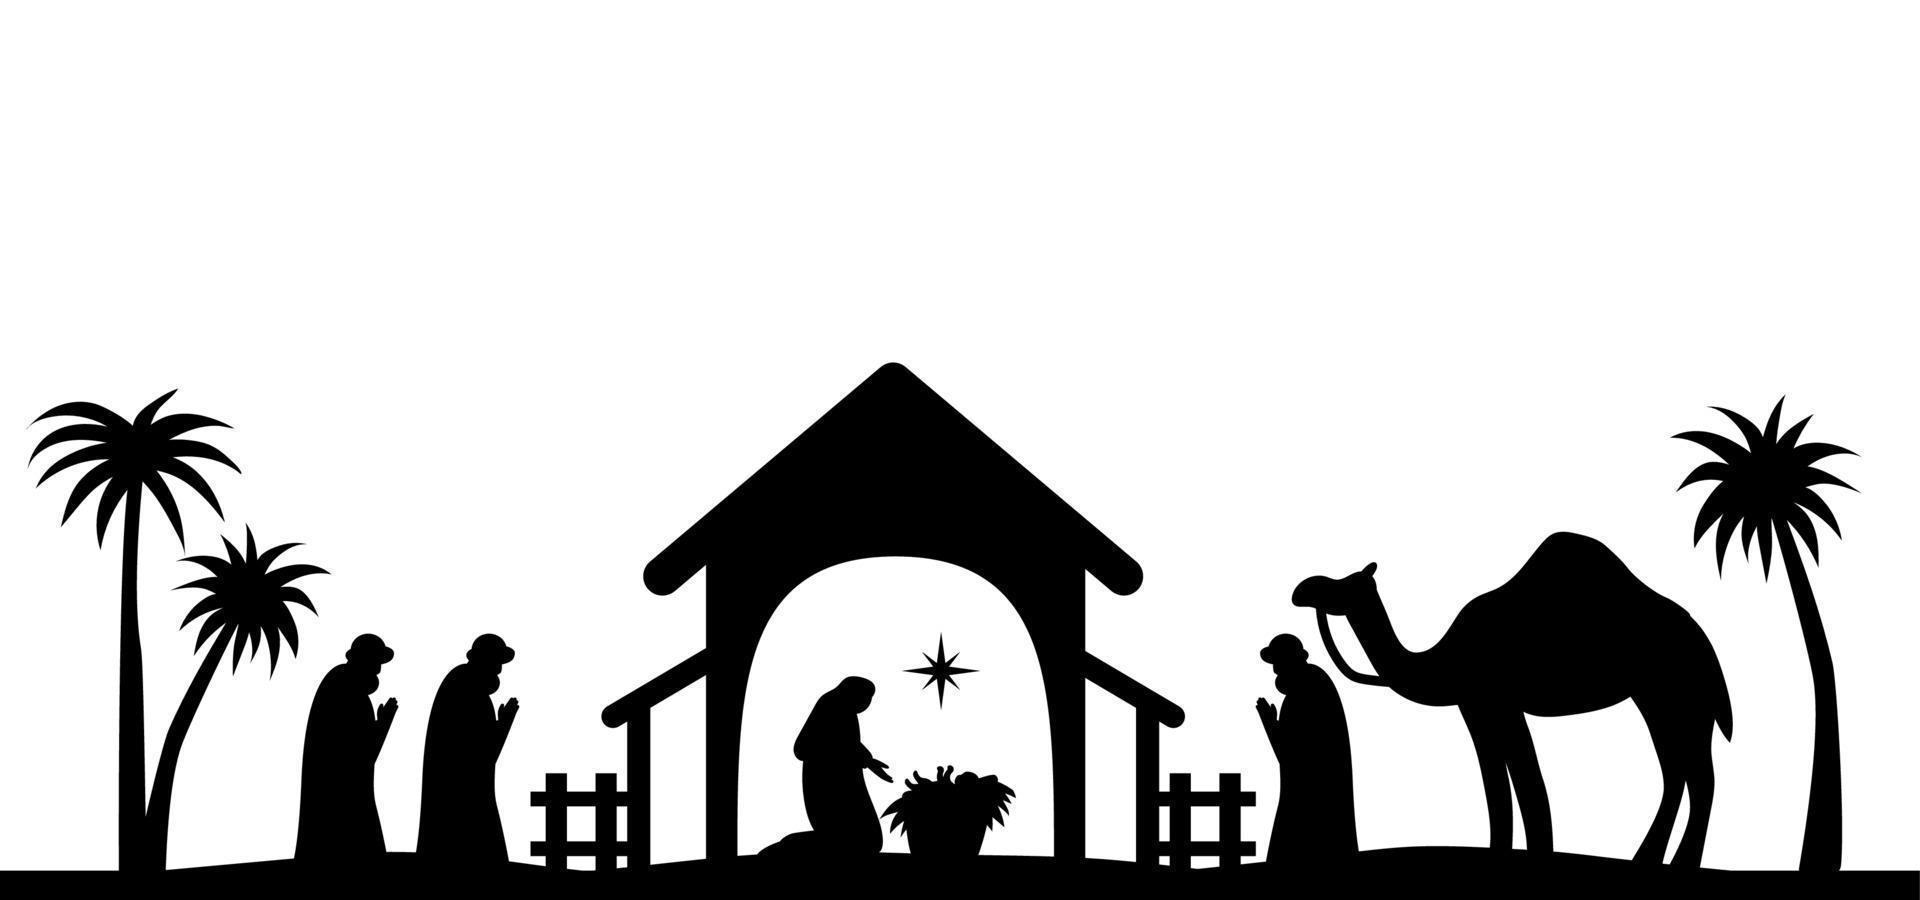 helig natt för barnets födelse Jesus Kristus siluett scen från religion kristendomen julkrubba. katolikernas bibliska religionshistoria. klipp för scrapbooking och tryck. vektor illustration.